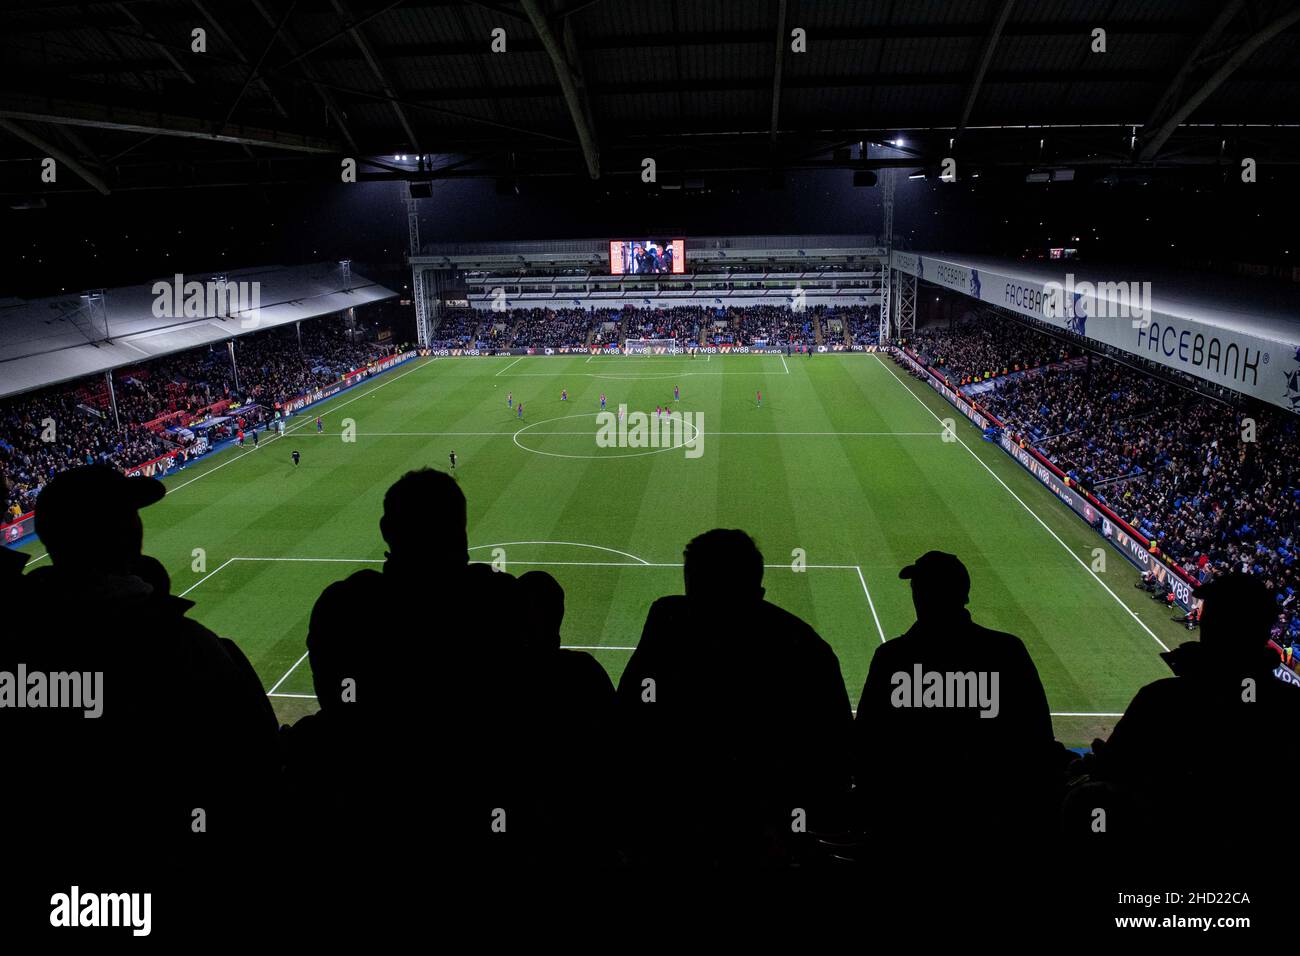 LONDRA, INGHILTERRA - GENNAIO 01: Una vista generale dello stadio durante la partita della Premier League tra Crystal Palace e West Ham United a Selhurst P. Foto Stock